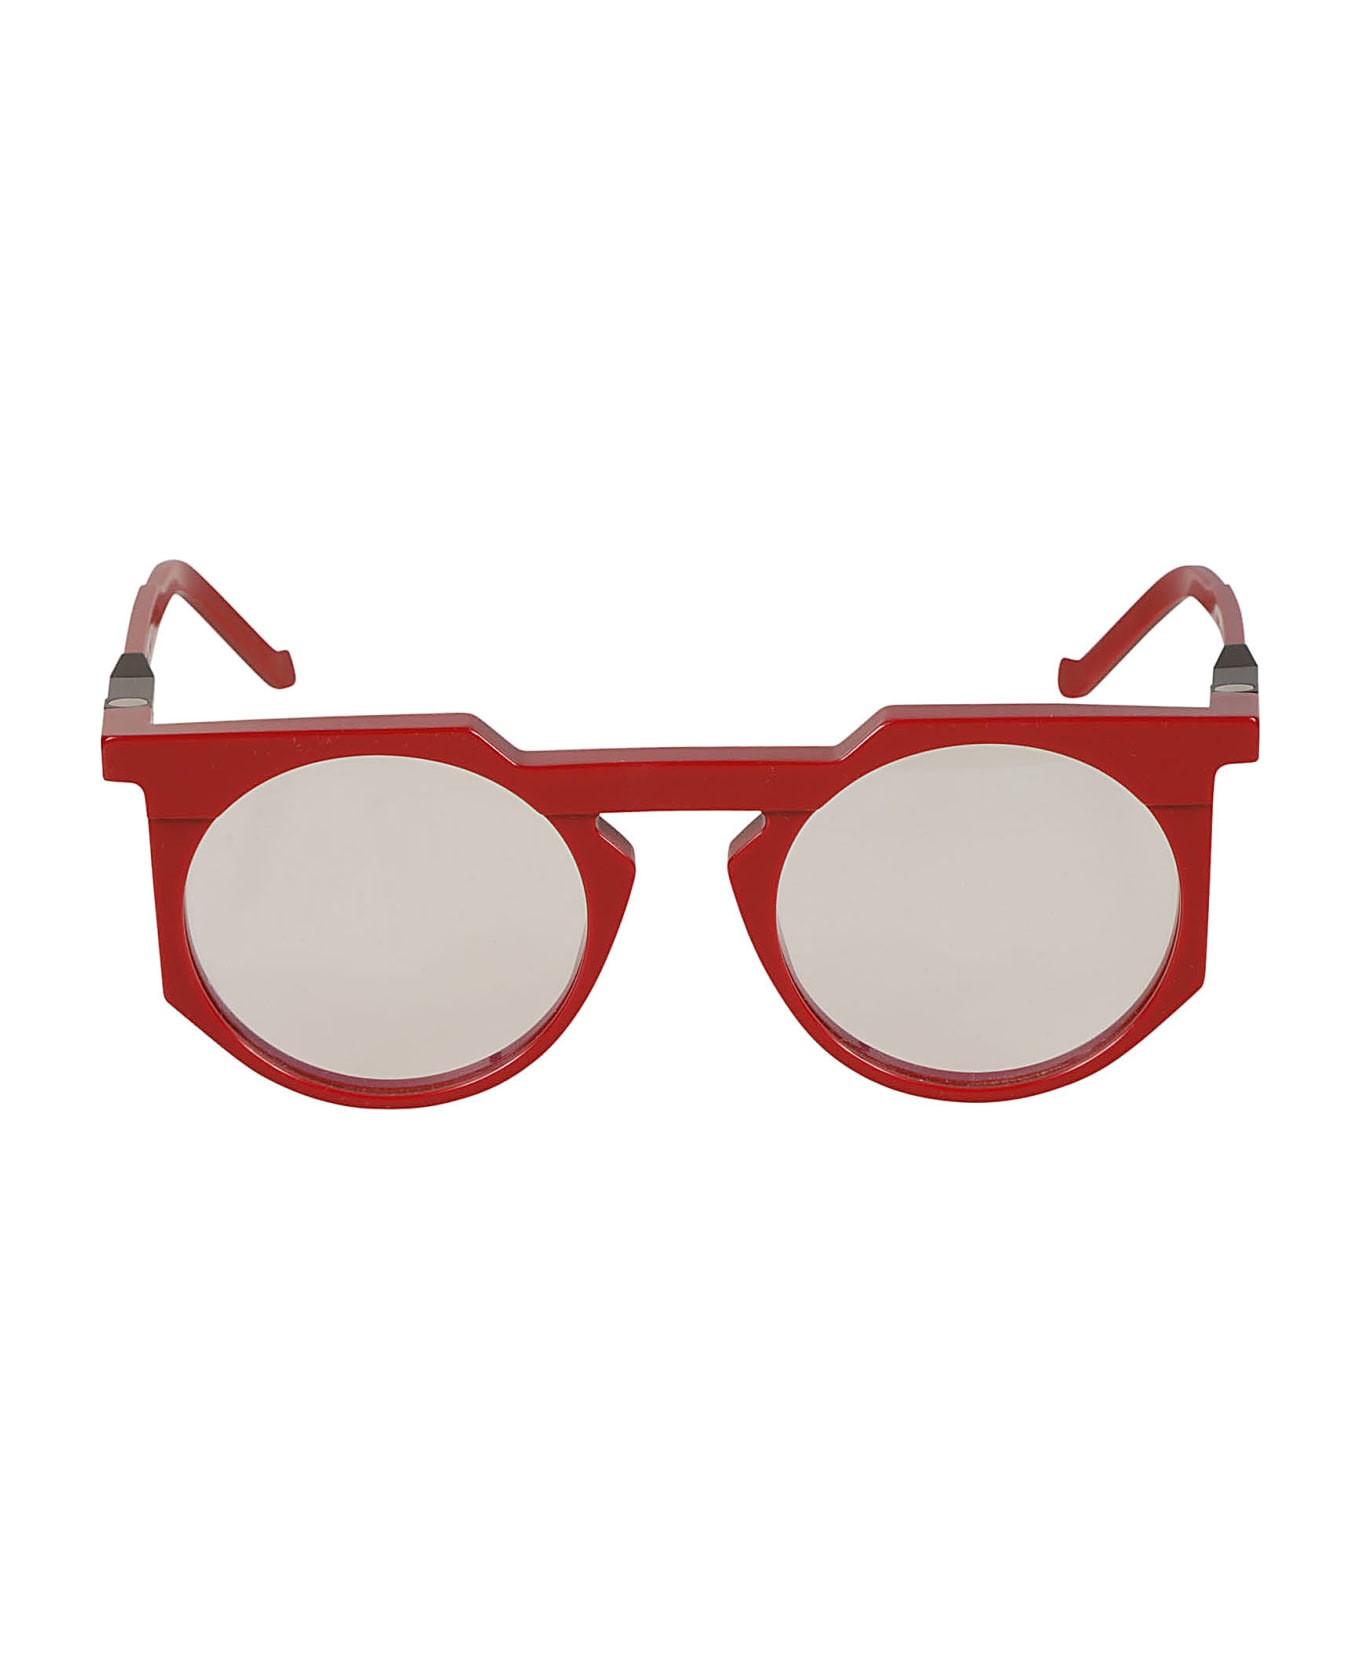 VAVA Clear Lens Round Frame Glasses Glasses - Red